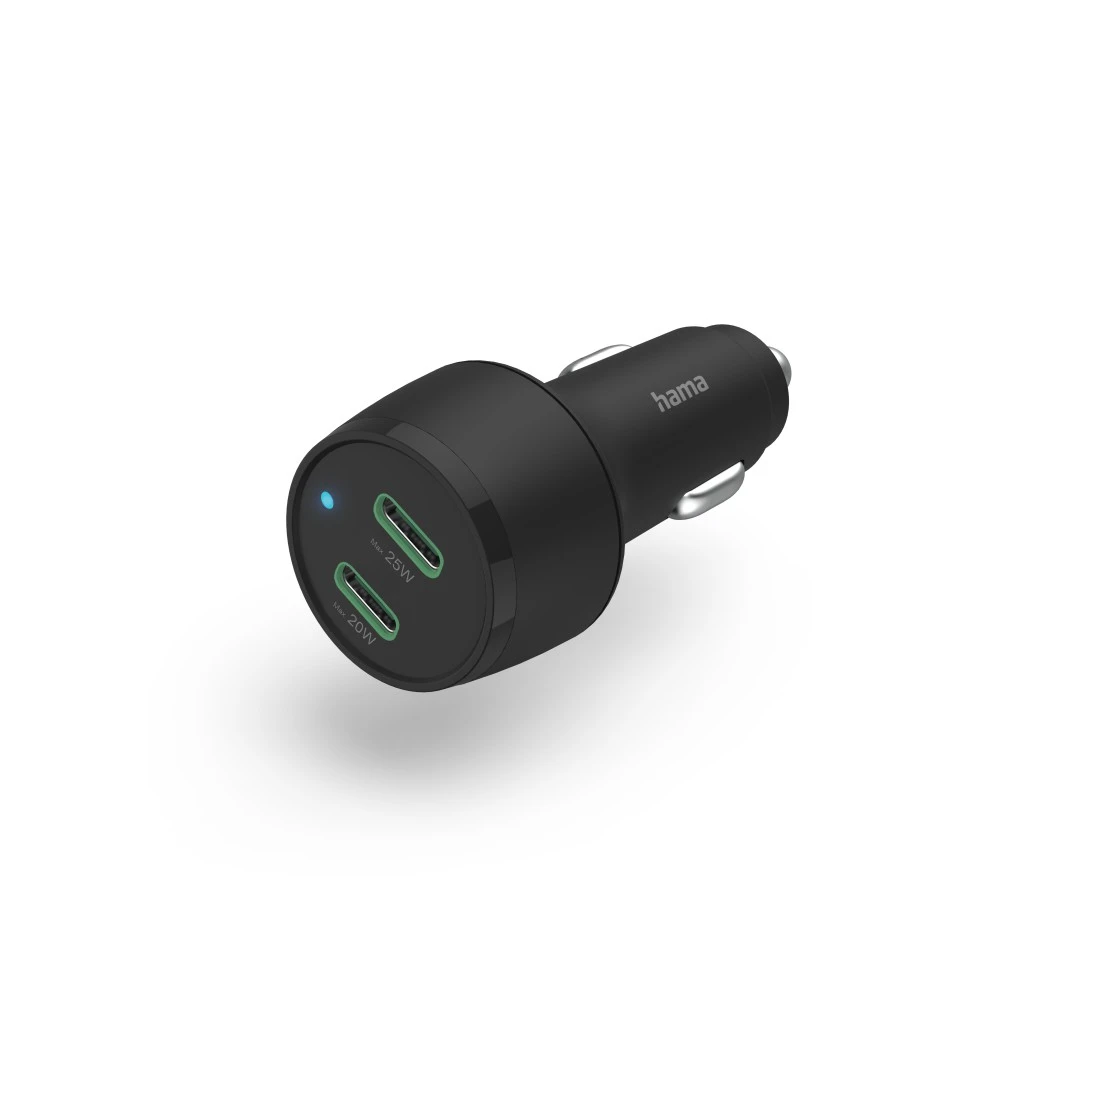 Chargeur USB pour voiture '3EN1', 12/24 V, noir sur